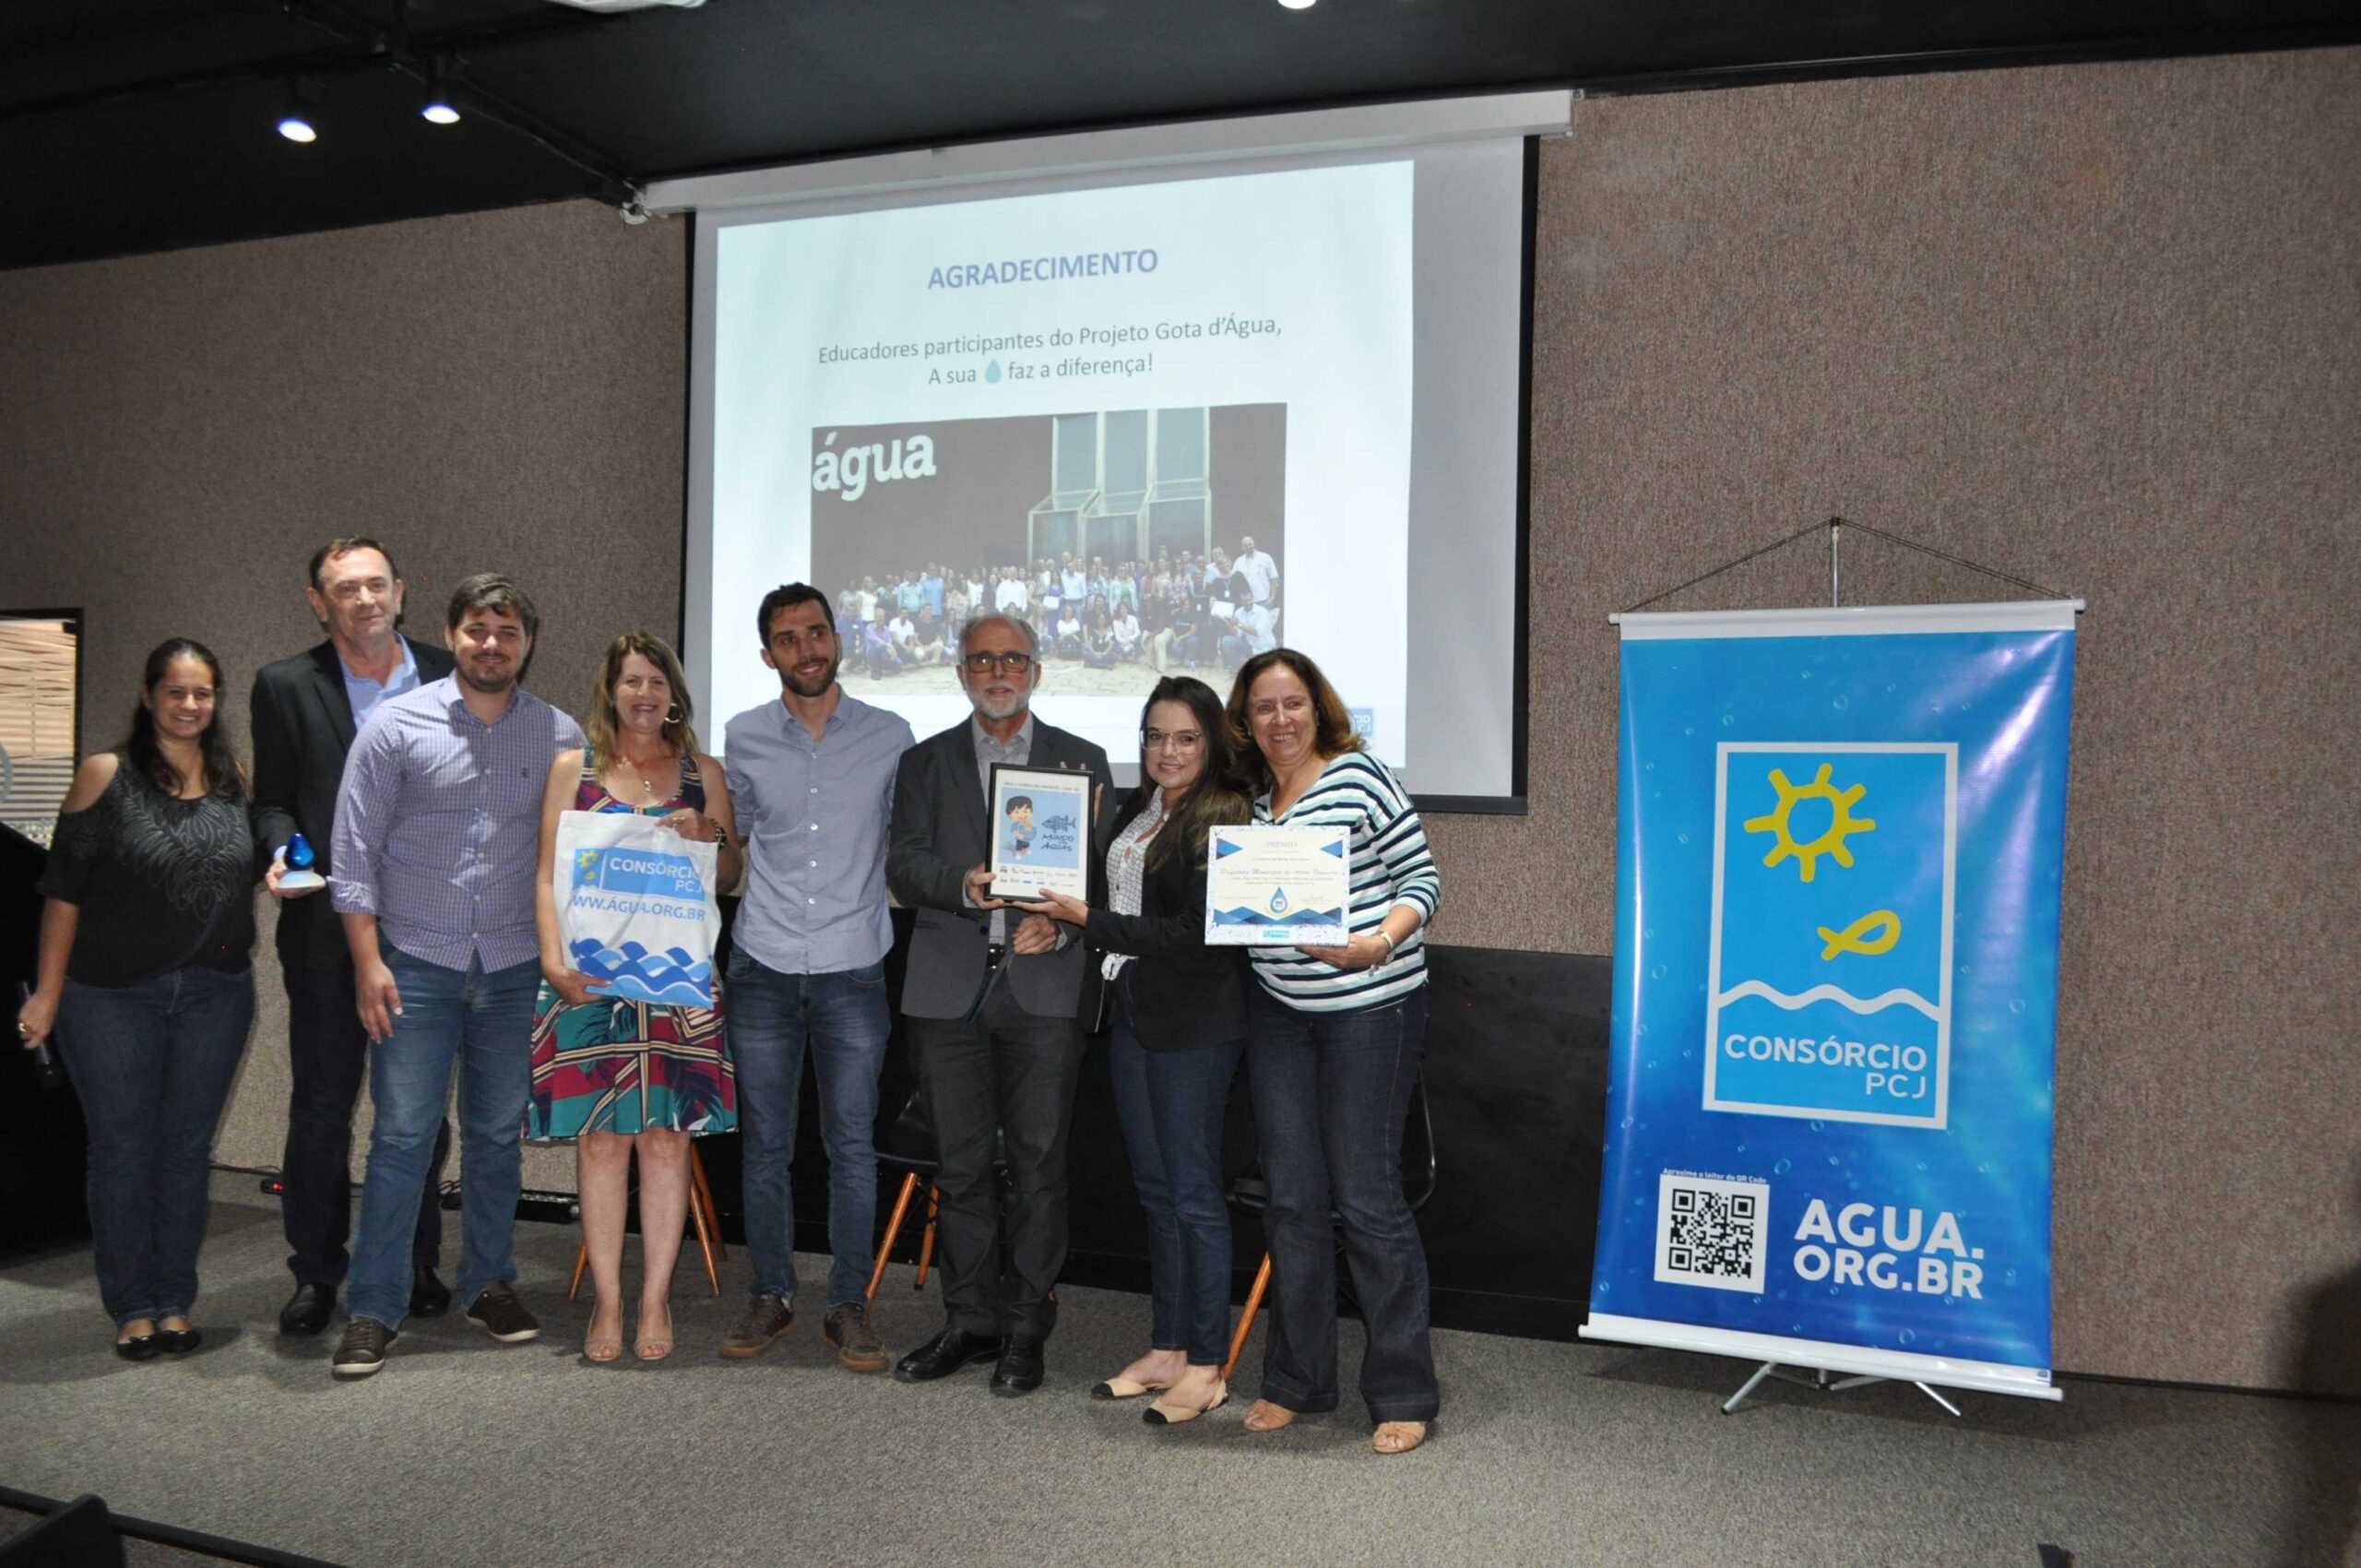 Município de Artur Nogueira ganha Prêmio “Sua Gota faz a Diferença” do Consórcio PCJ como melhor projeto de Educação Ambiental de 2018